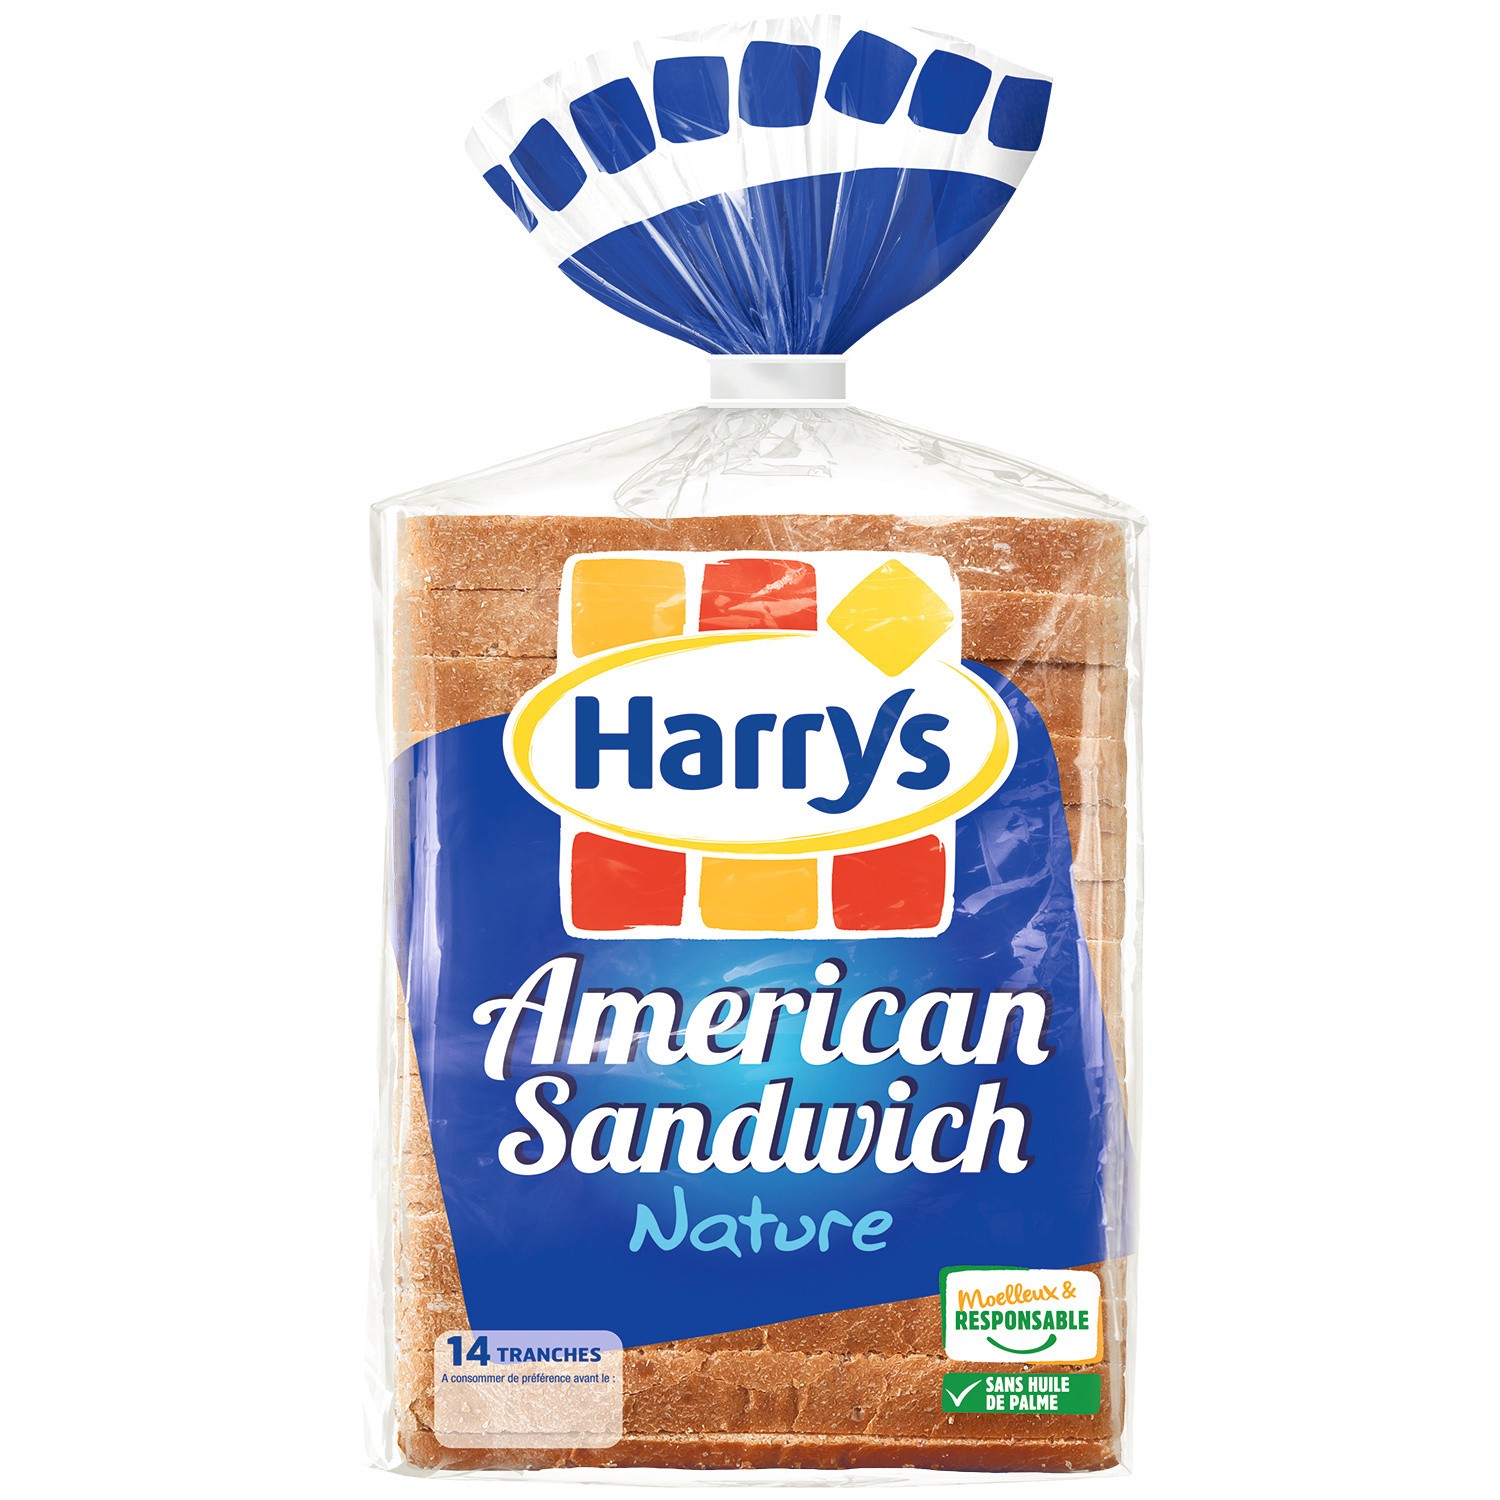 Soft Bread American Sandwich Harry’s